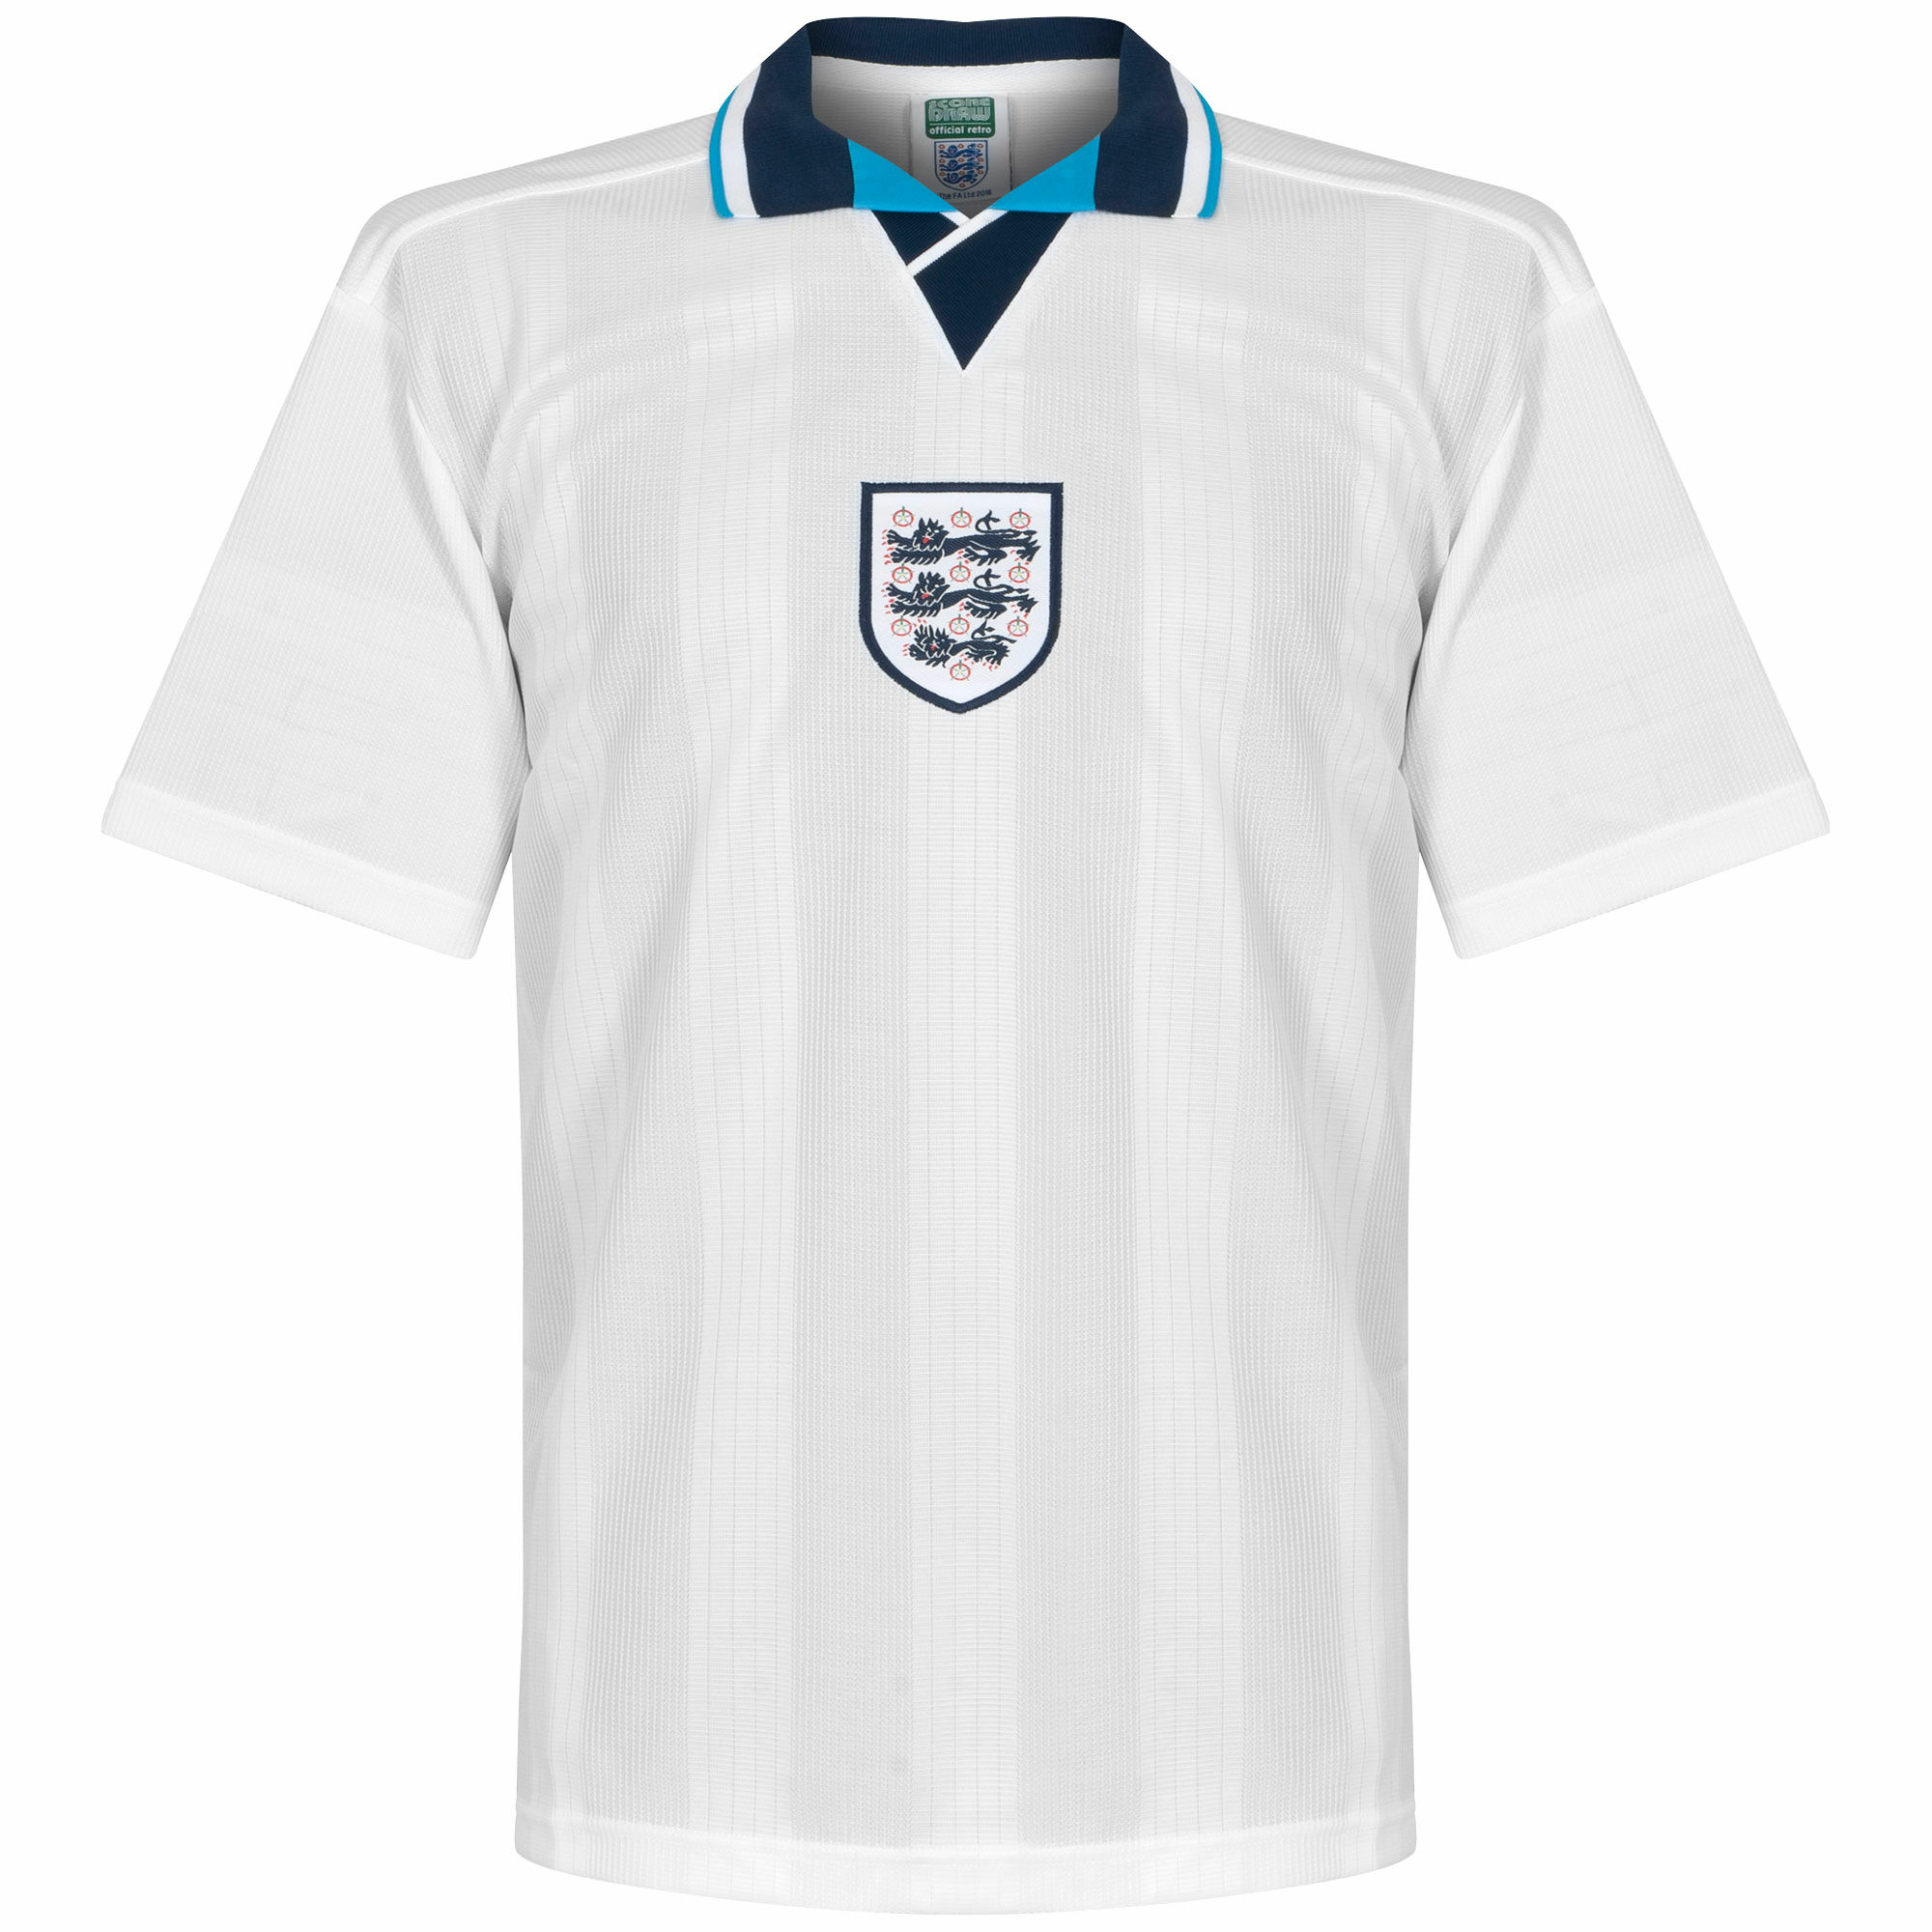 Anglie - Dres fotbalový - bílý, retrostyl, Euro 96, domácí